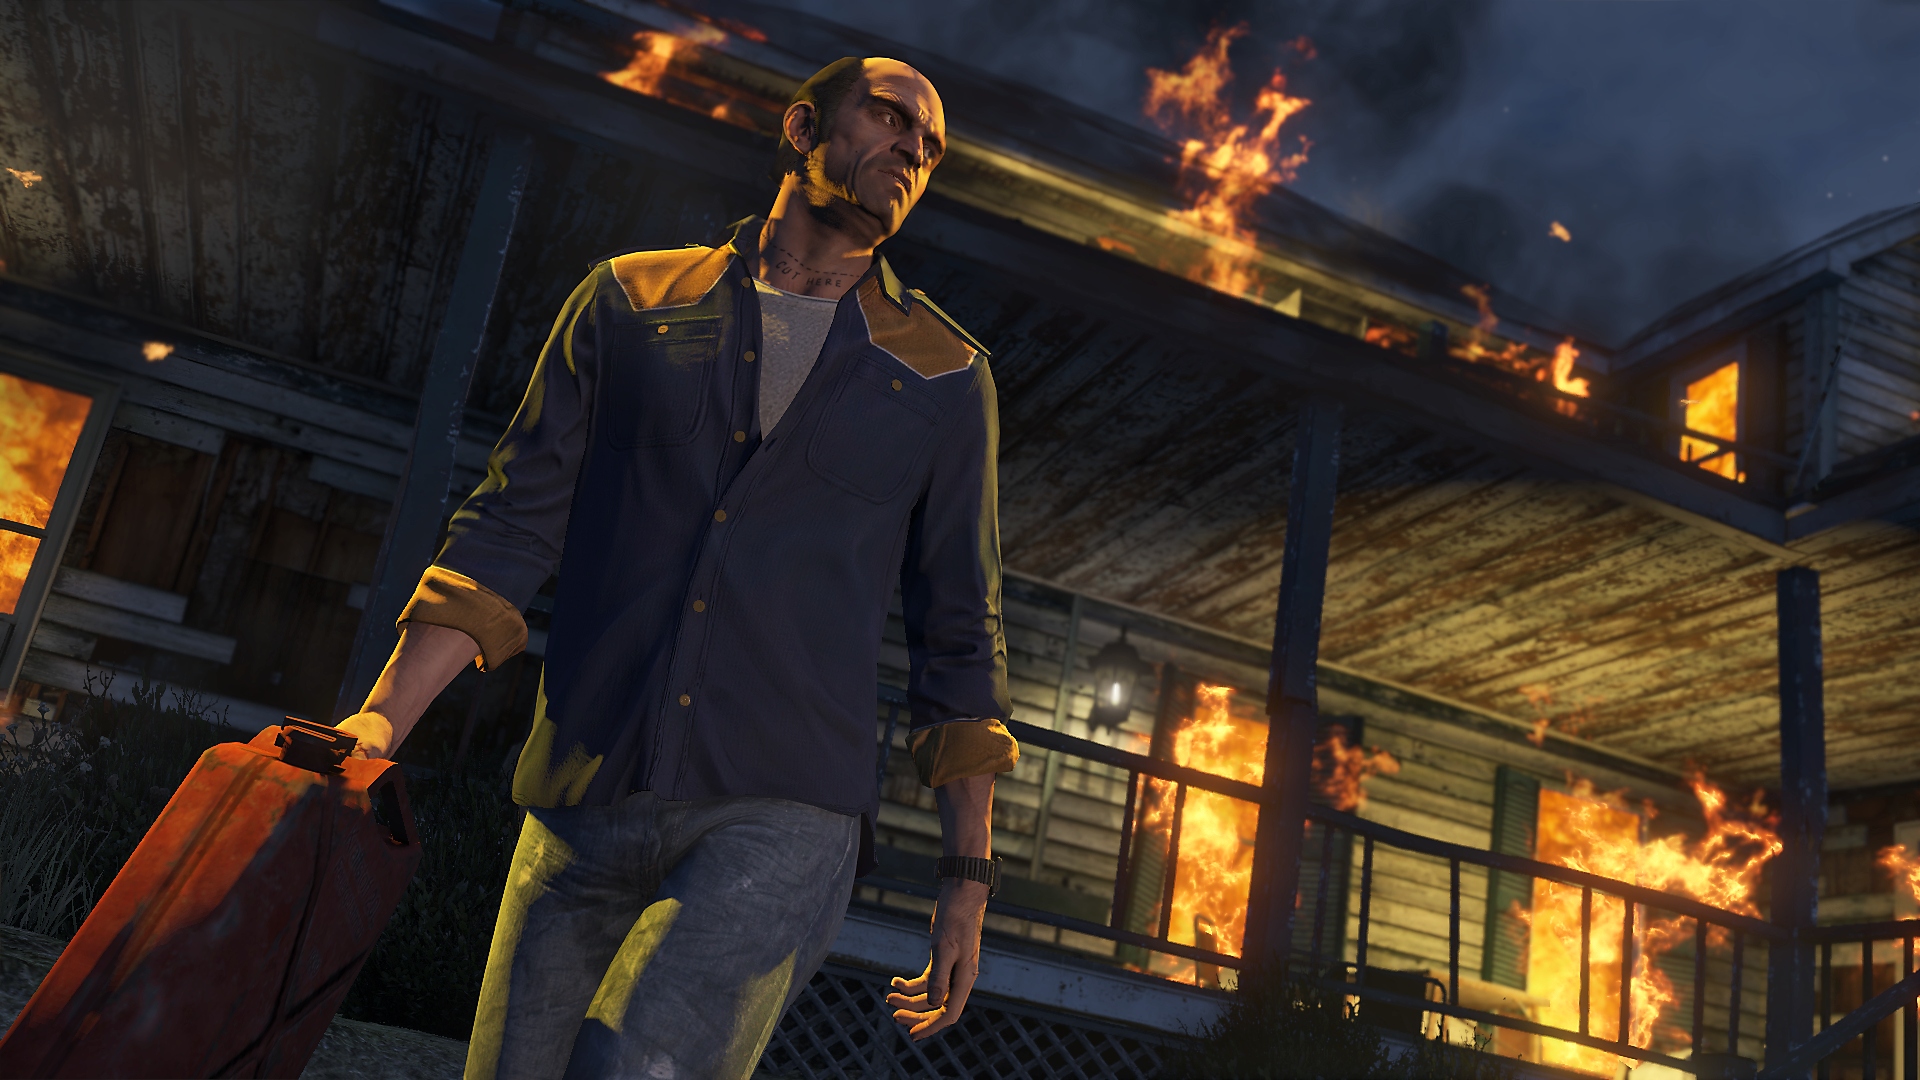 Captura de pantalla de Grand Theft Auto V con Trevor, personaje principal, alejándose de un edificio en llamas con una lata de gasolina en la mano